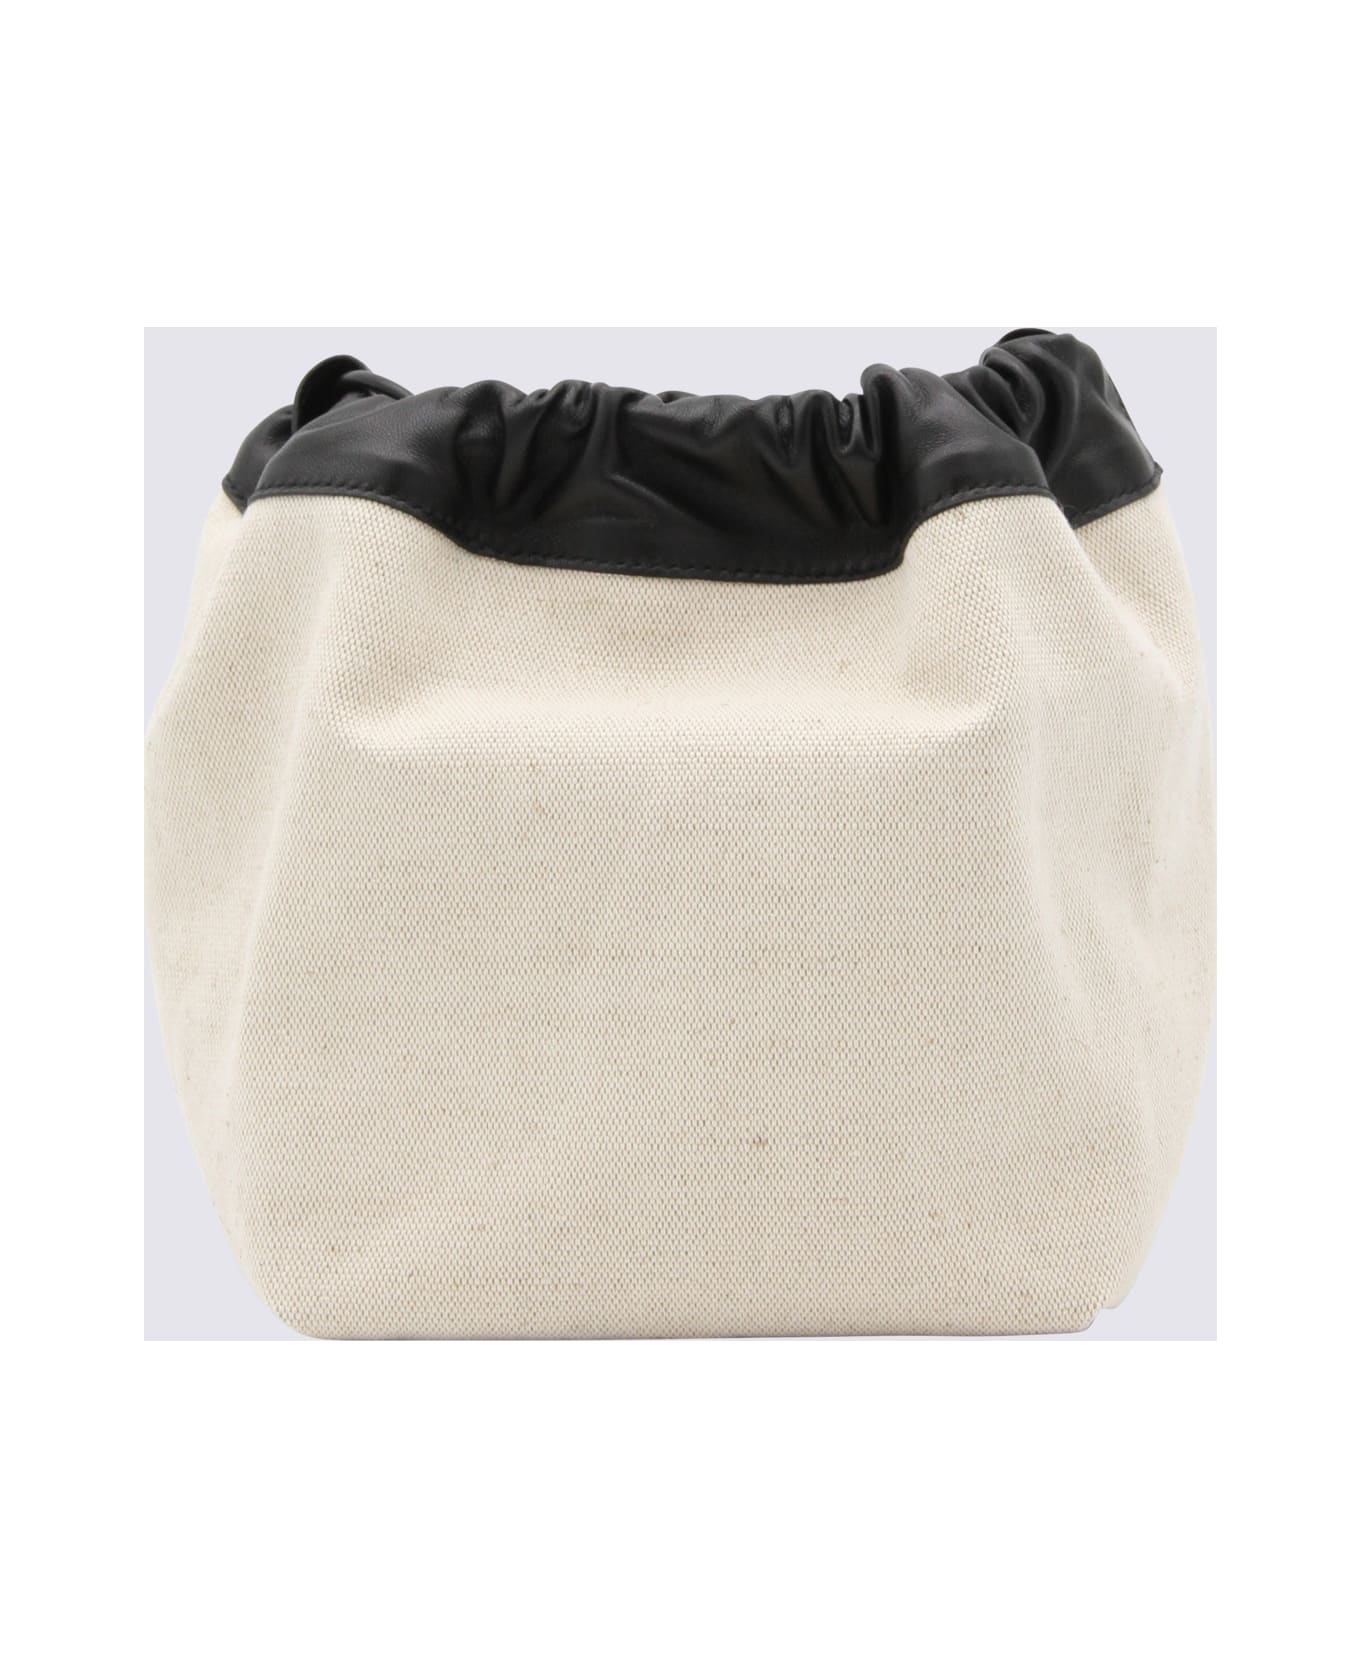 Jil Sander Ivory Canvas And Black Leather Bucket Bag - Beige